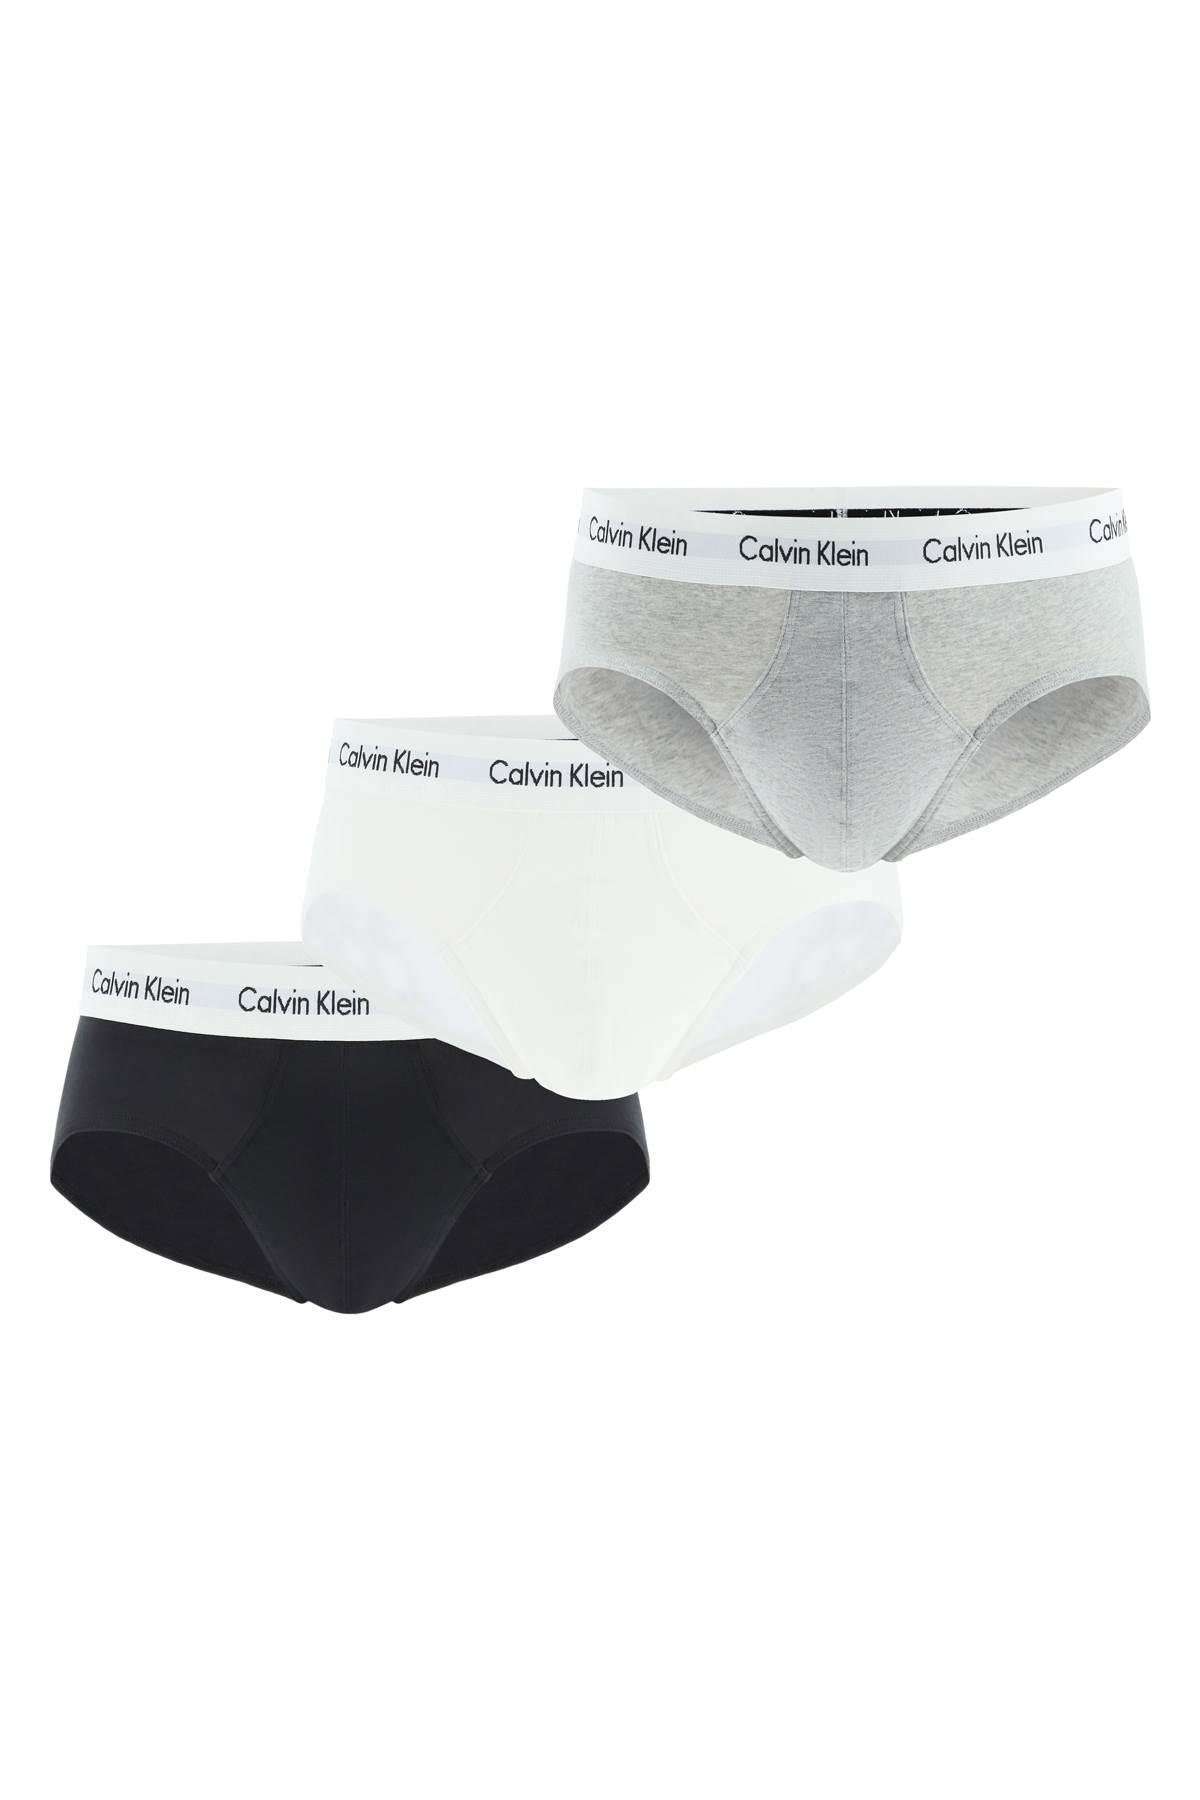 Calvin Klein Tri-pack Underwear Briefs